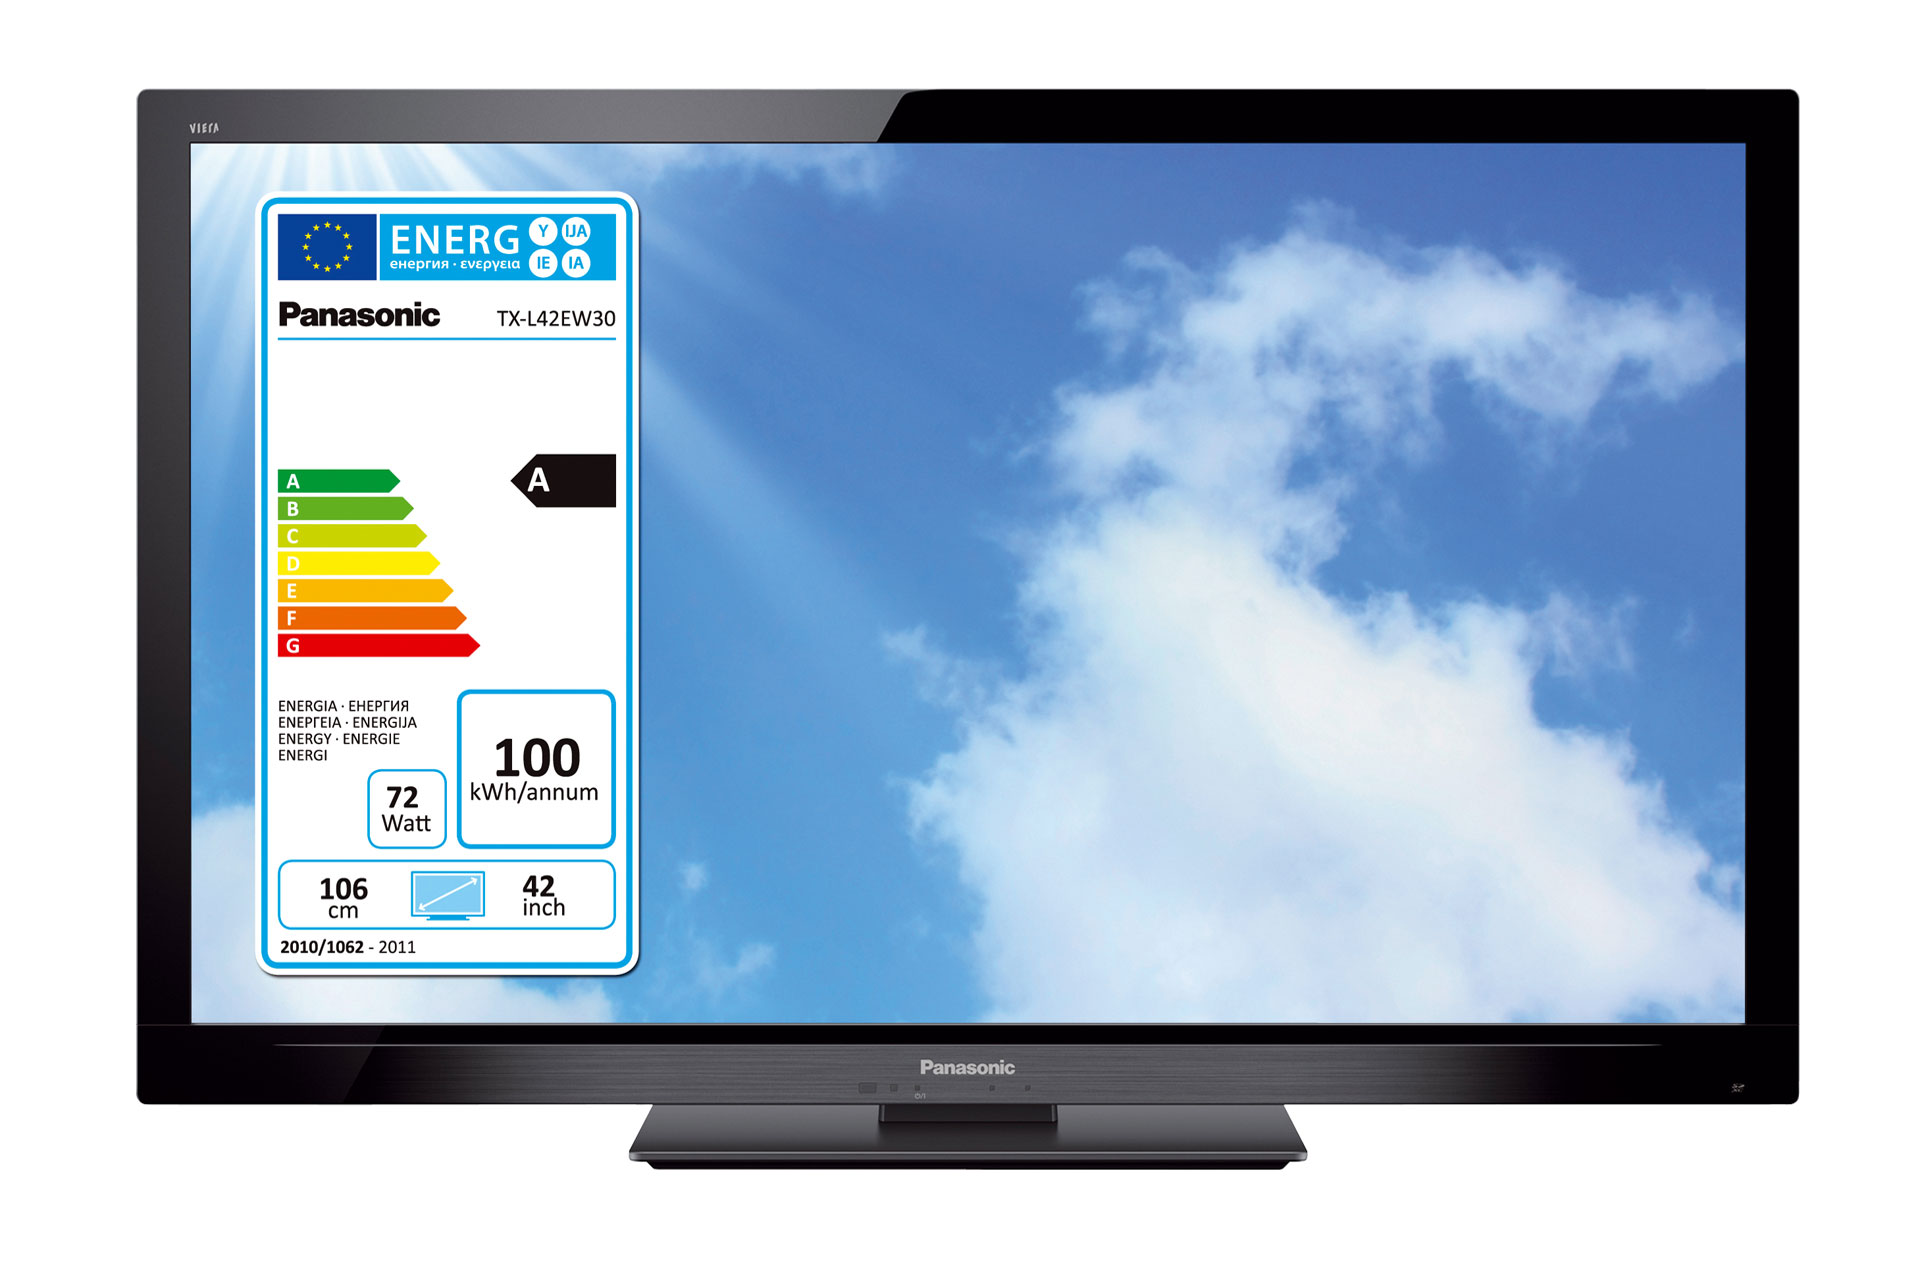 Ab November 2011 ist die Kennzeichnung aller Fernseher mit dem neuen EU-Energielabel mit der Einstufung in eine der sieben Effizienzklassen – von A (höchste Effizienz) bis G (geringste Effizienz) Pflicht.